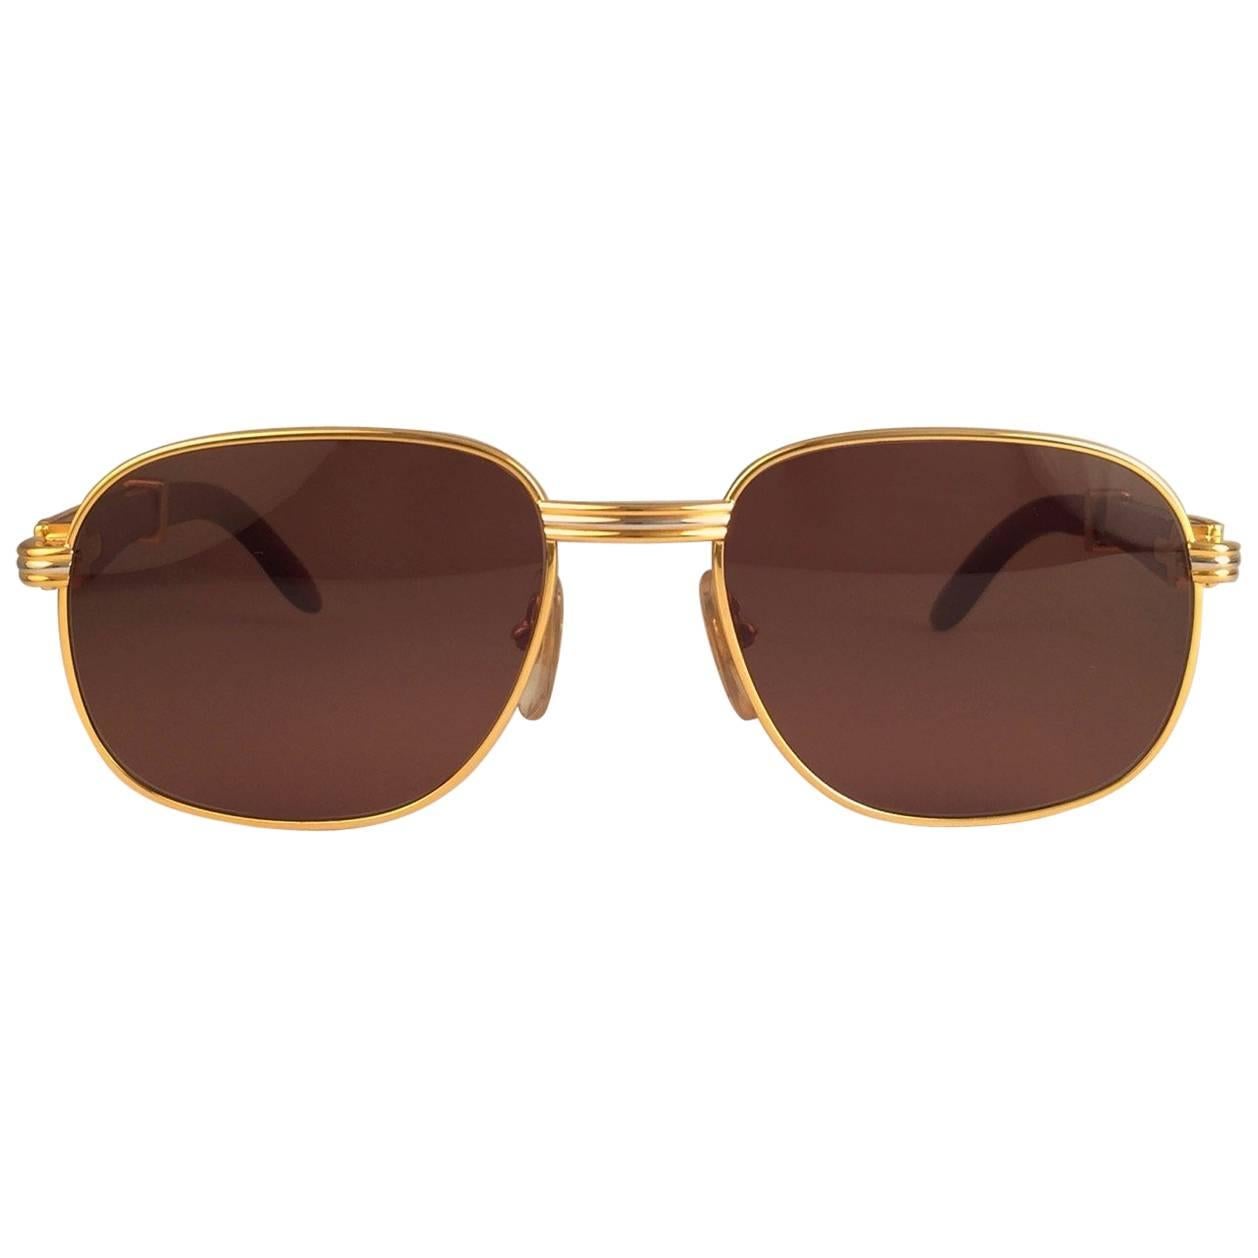 Neue 1990 Cartier Full Set Monceau Palisander Hardwood Sonnenbrille mit neuen soliden honigbraunen (uv-Schutz) Gläsern. 
Rahmen mit der Vorderseite und den Seiten in Gelb- und Weißgold und hat die berühmten Hartholz mit Goldakzenten Bügel.